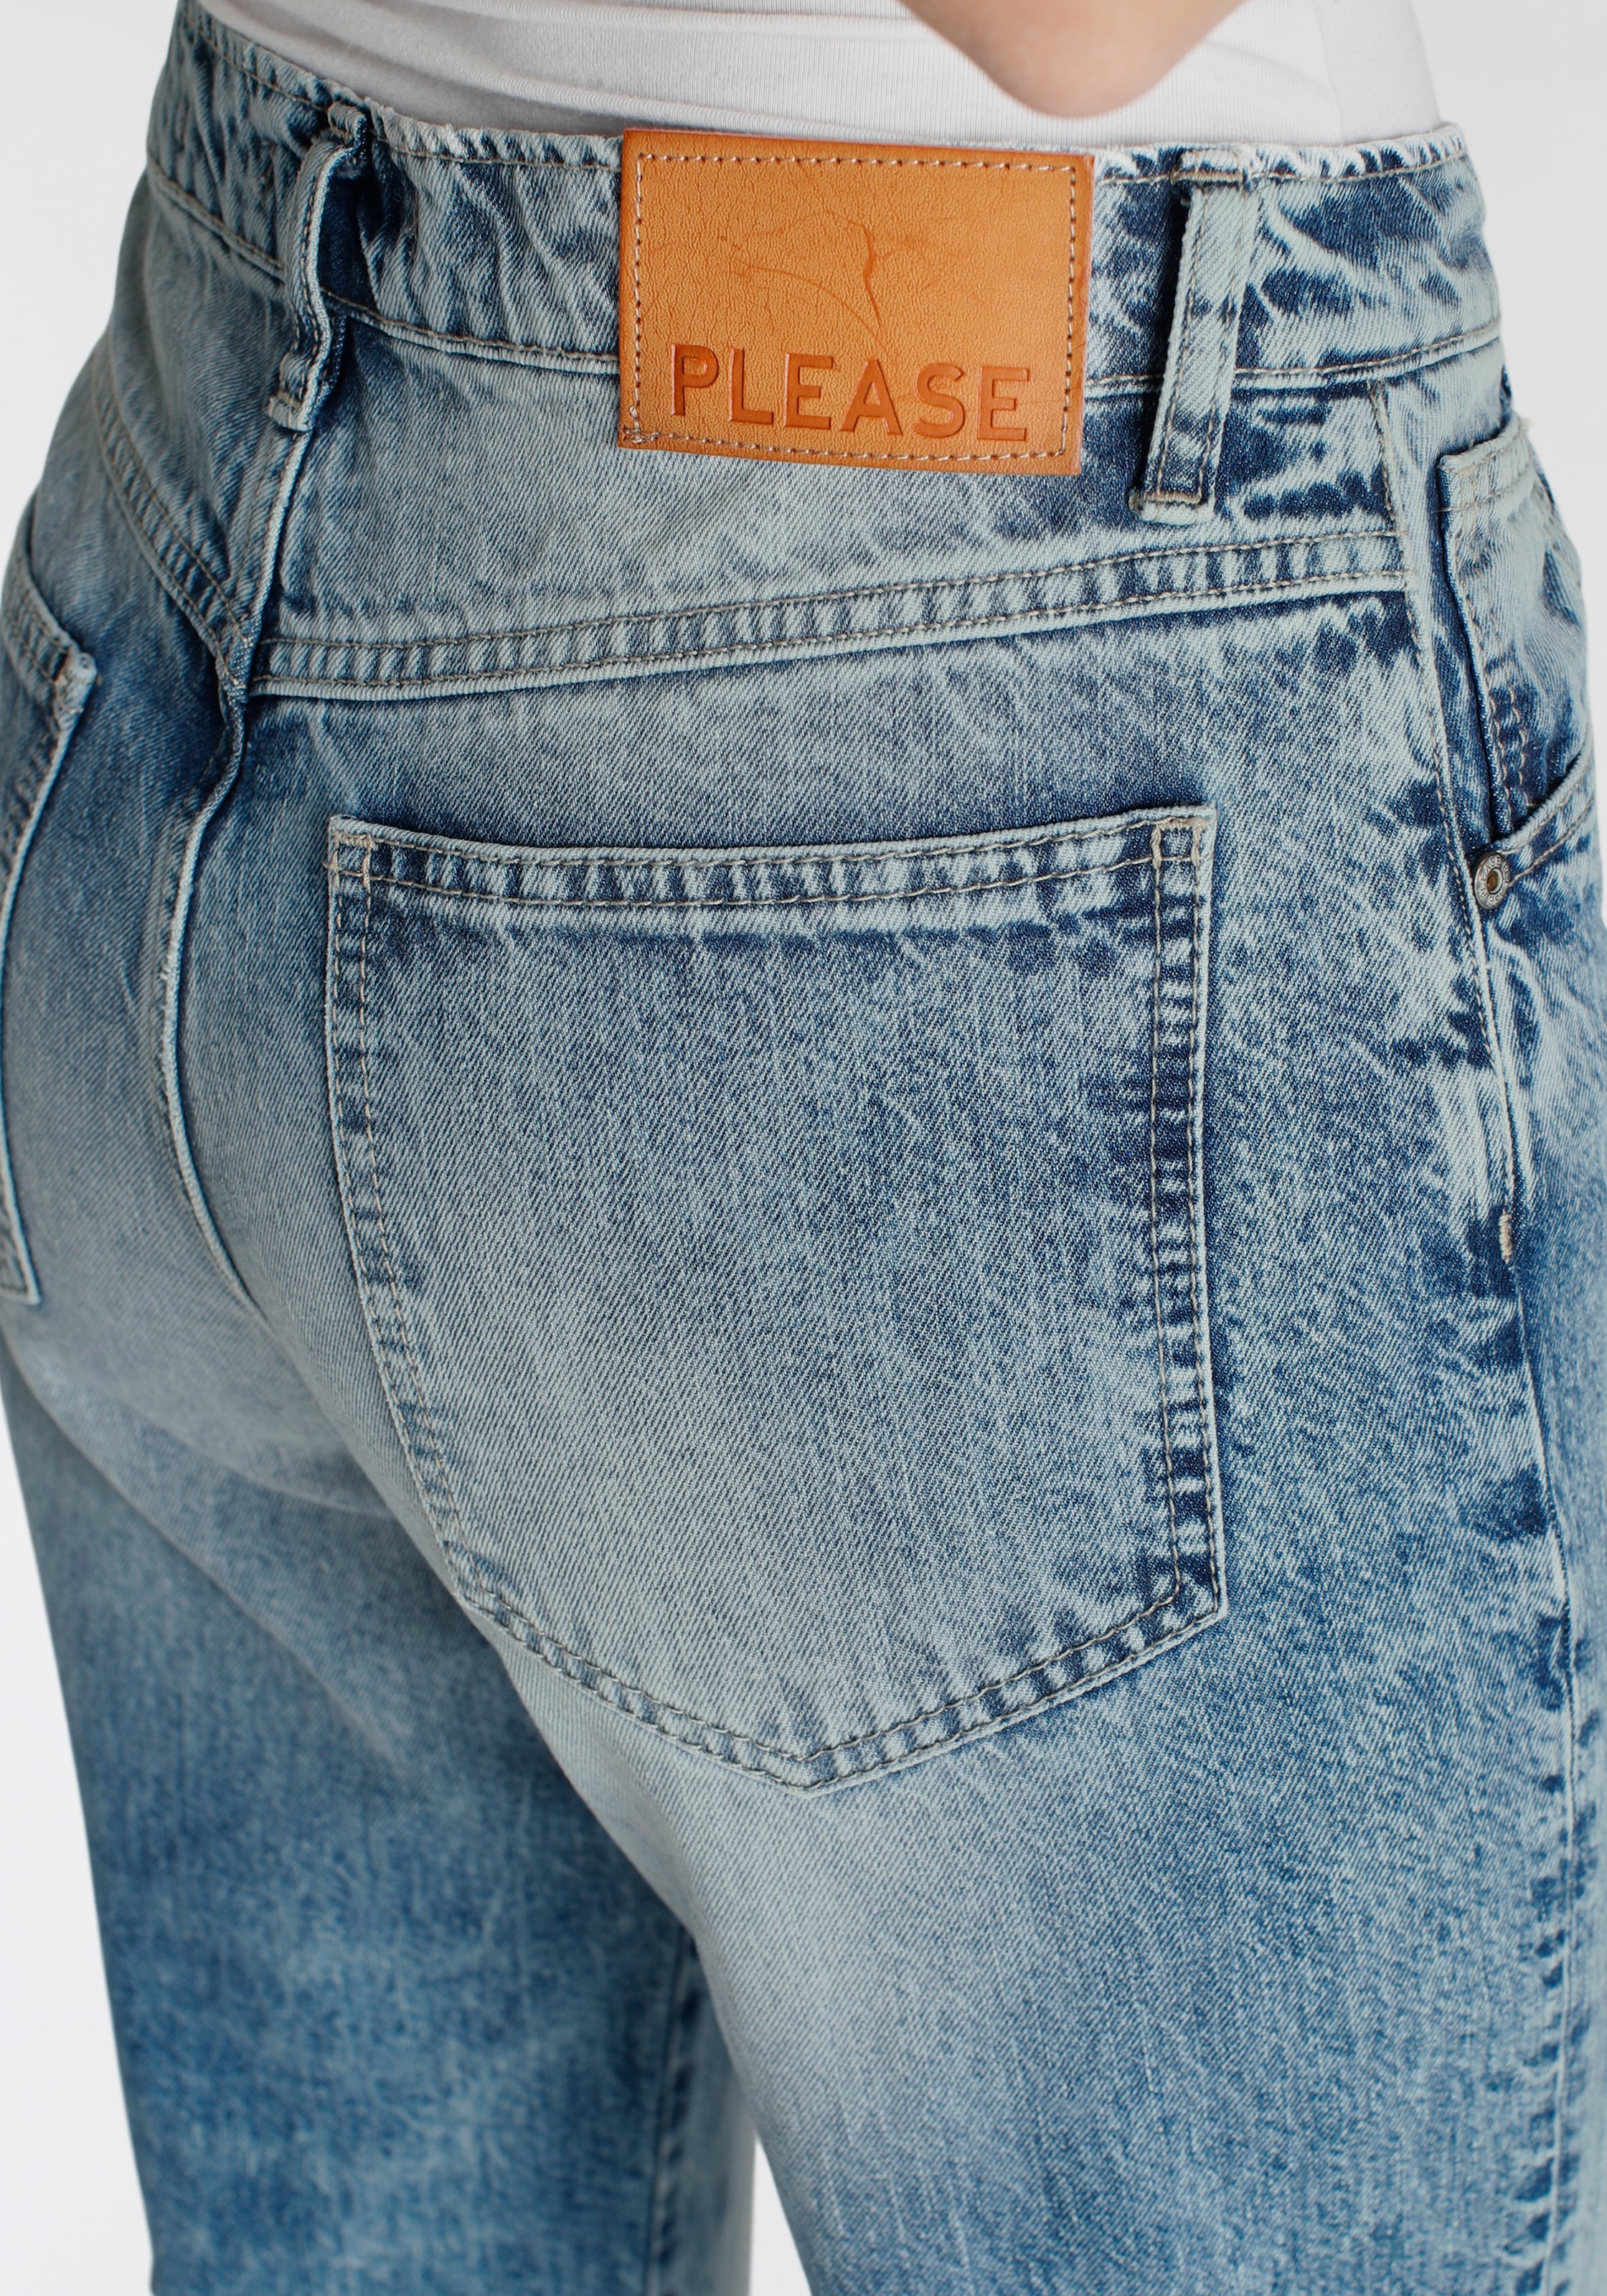 Please Jeans Boyfriend-Hose kaufen bei OTTO